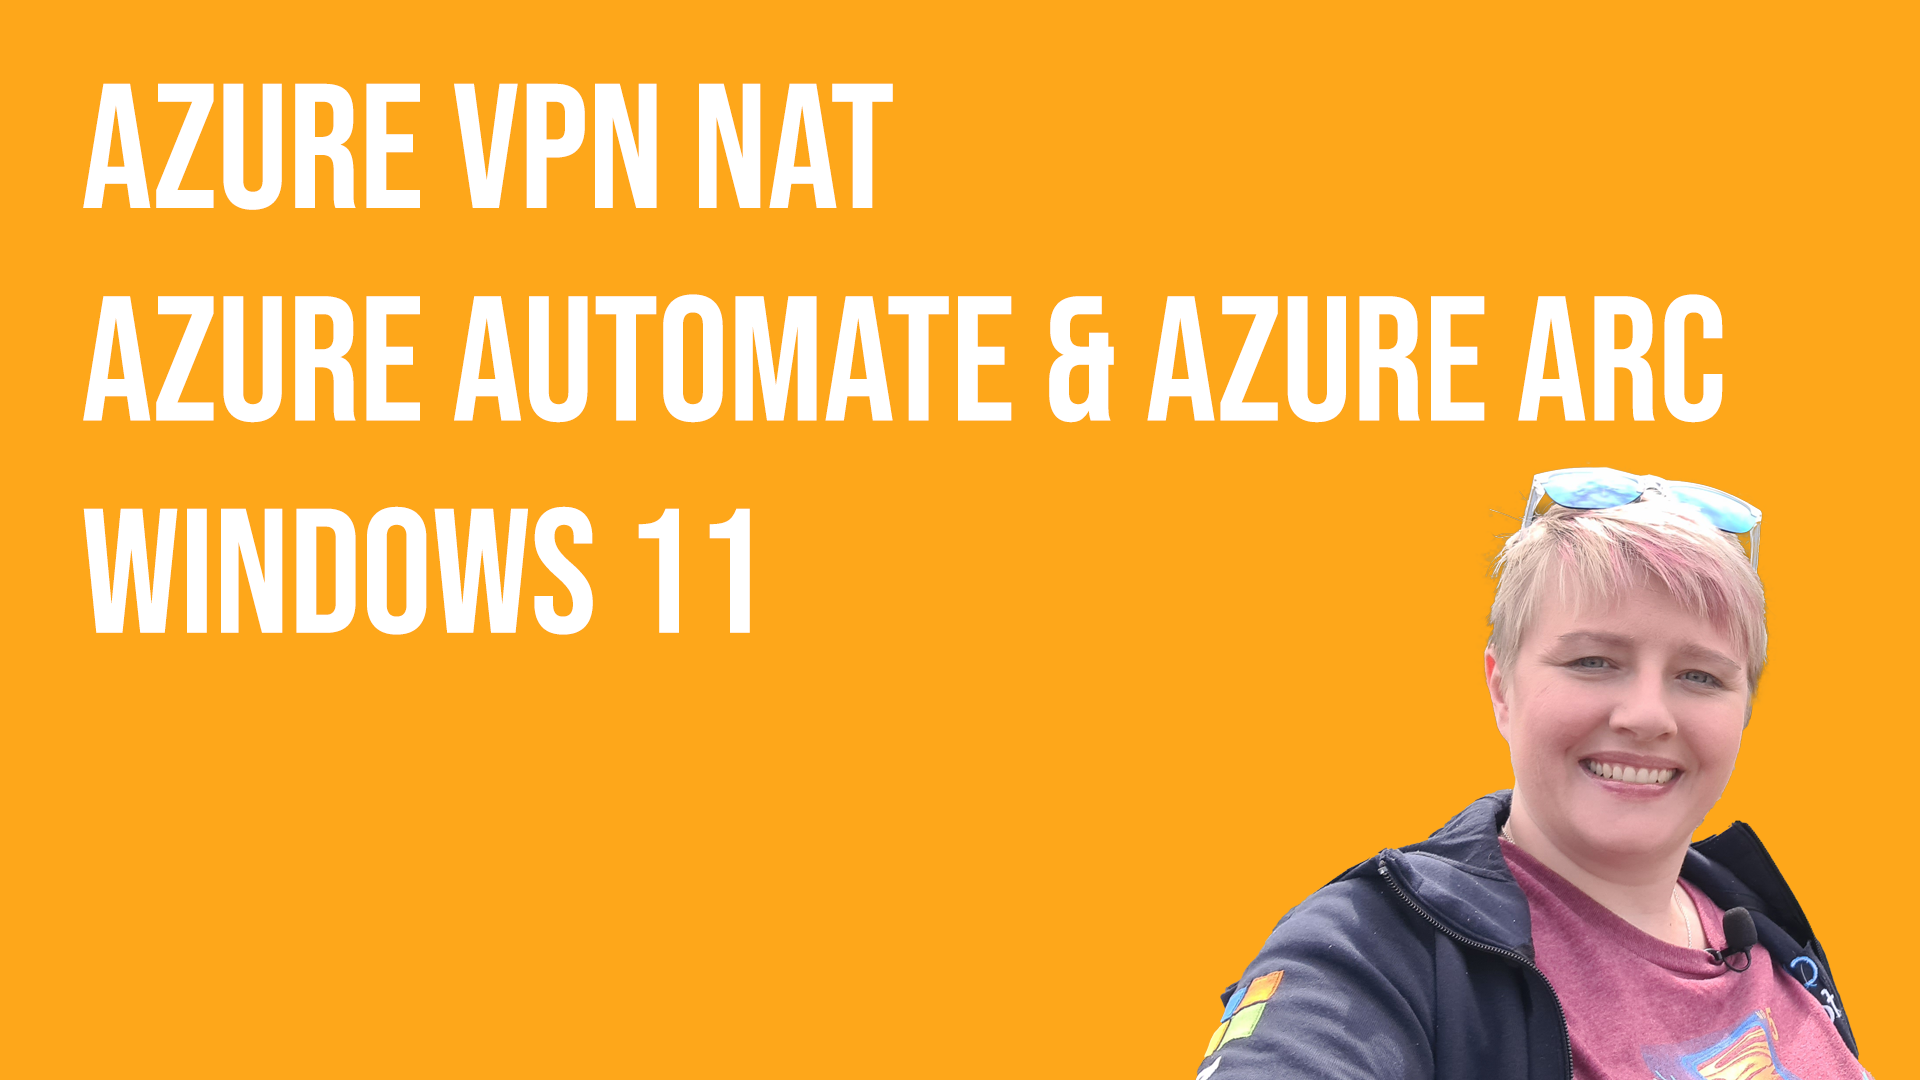 Weekly Update #98 - Azure VPN NAT, Azure Automanage & Azure Azure and Windows 11!